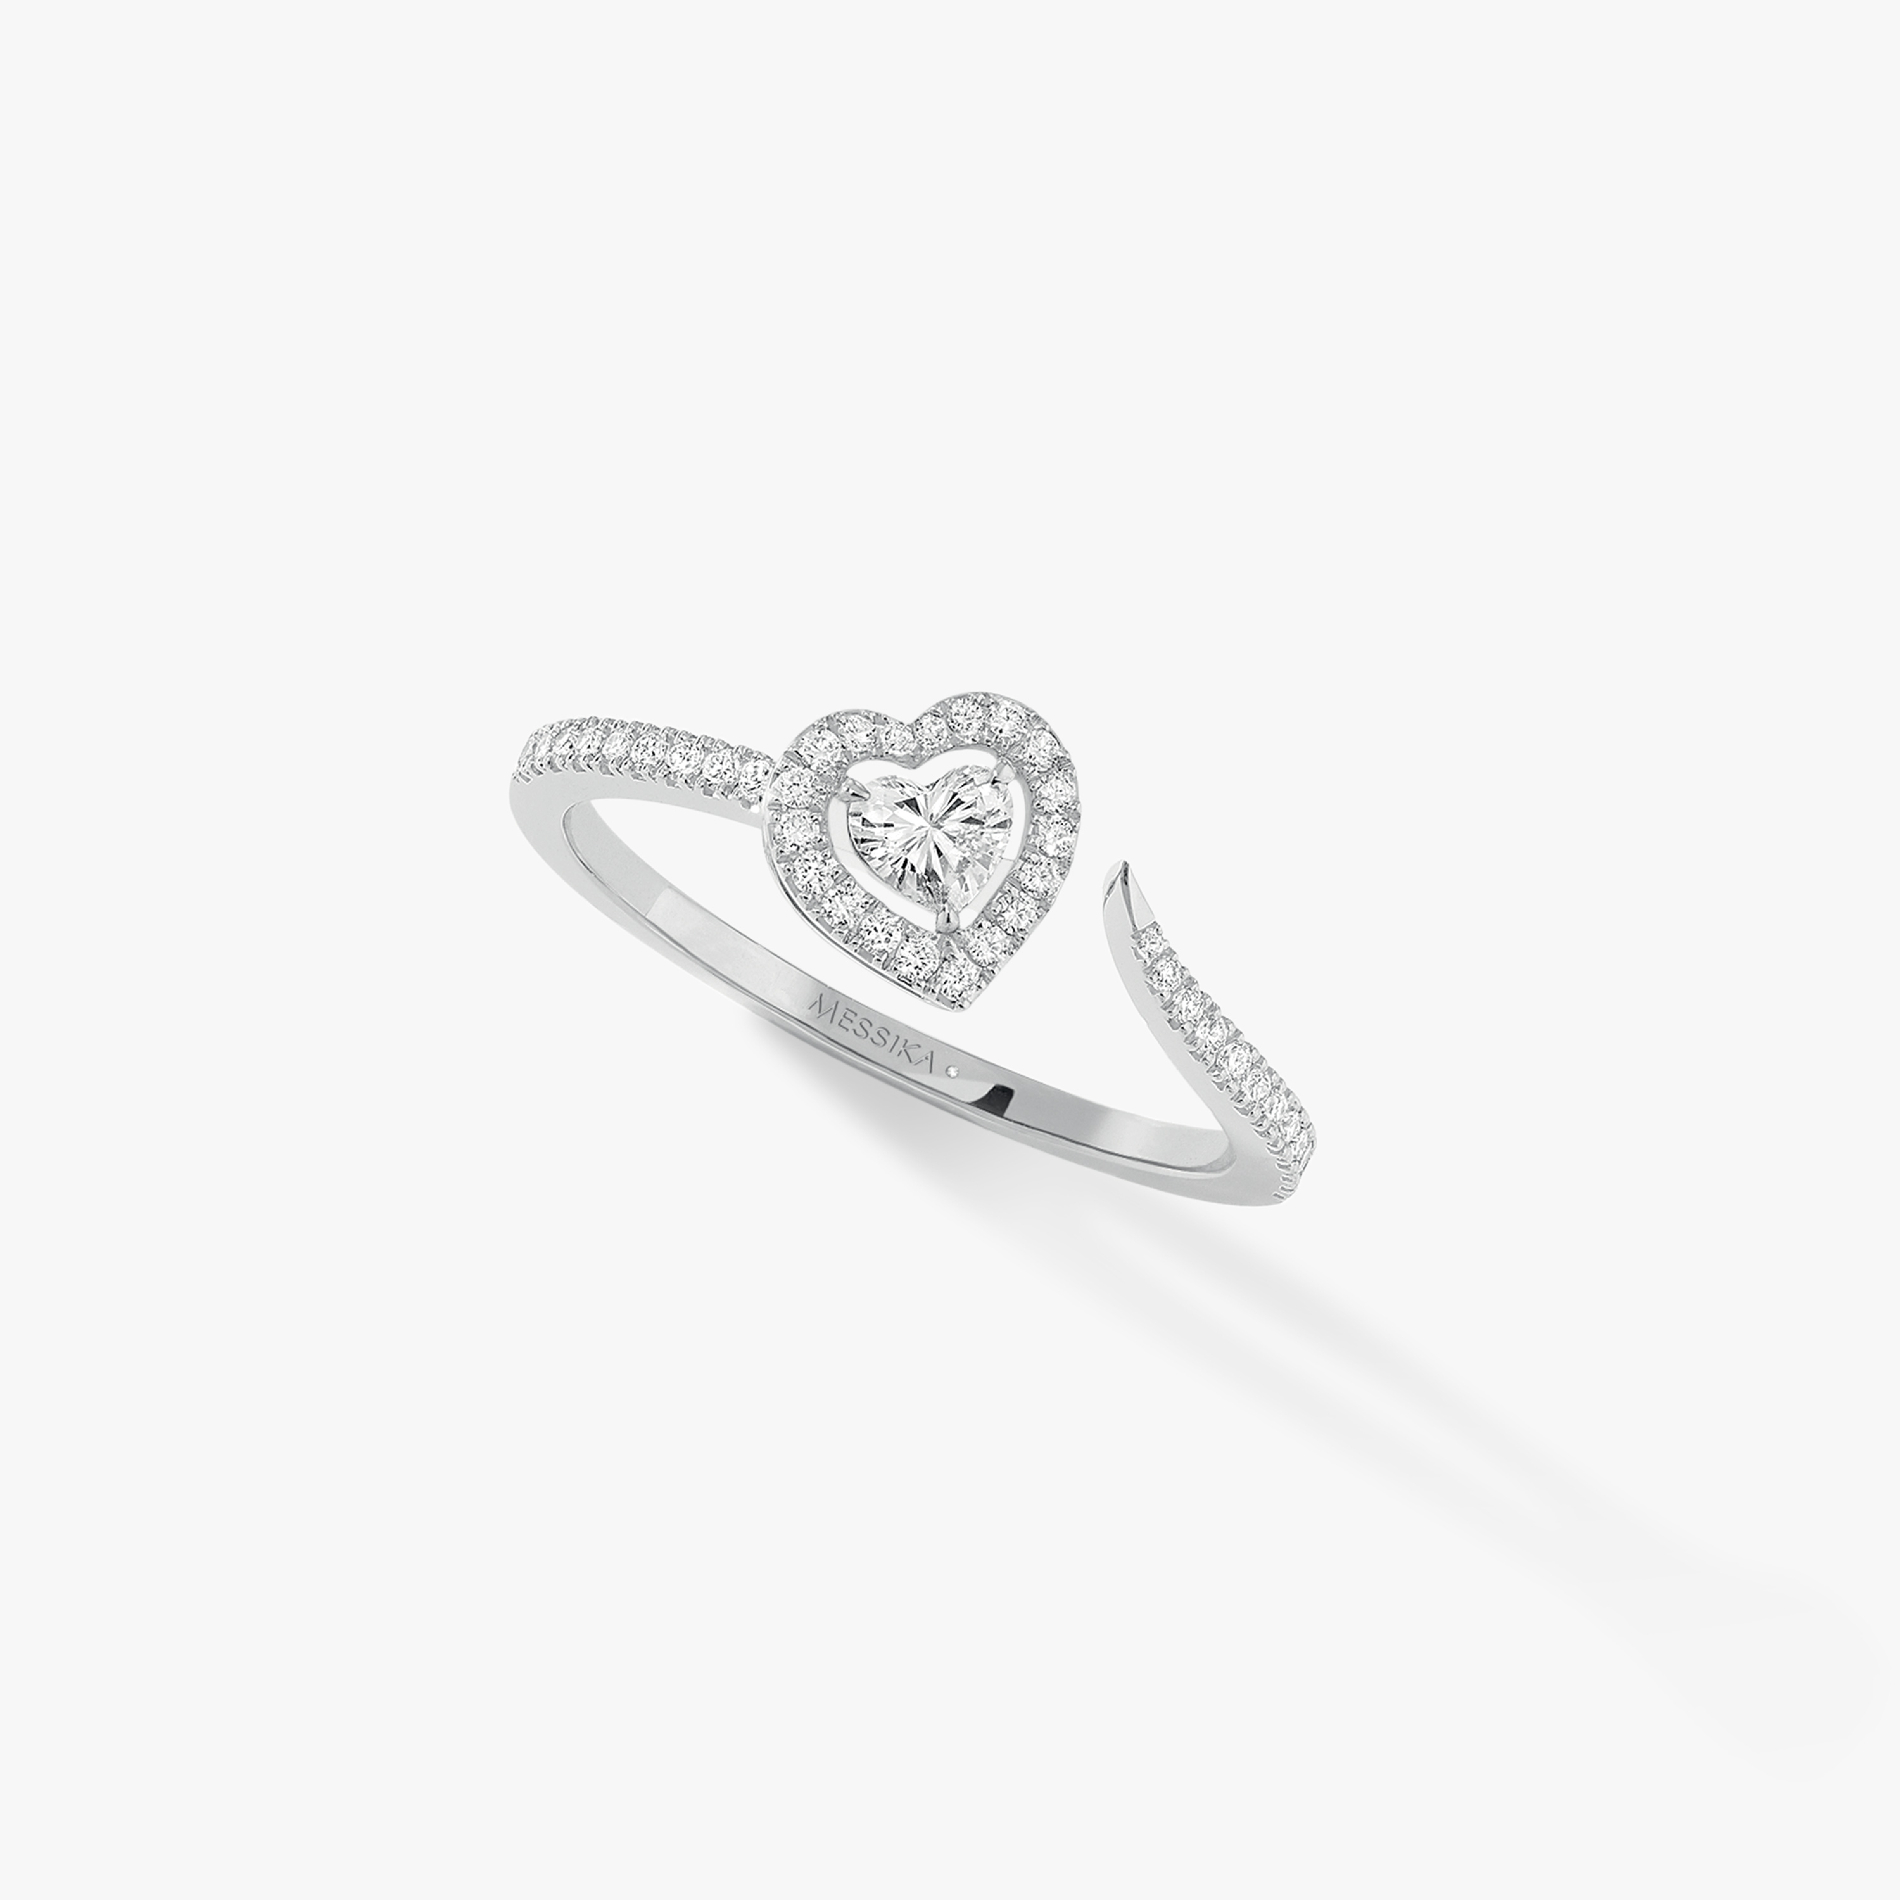 Bague Femme Or Blanc Diamant Bague Joy diamant cœur pavée 0,15ct 11438-WG